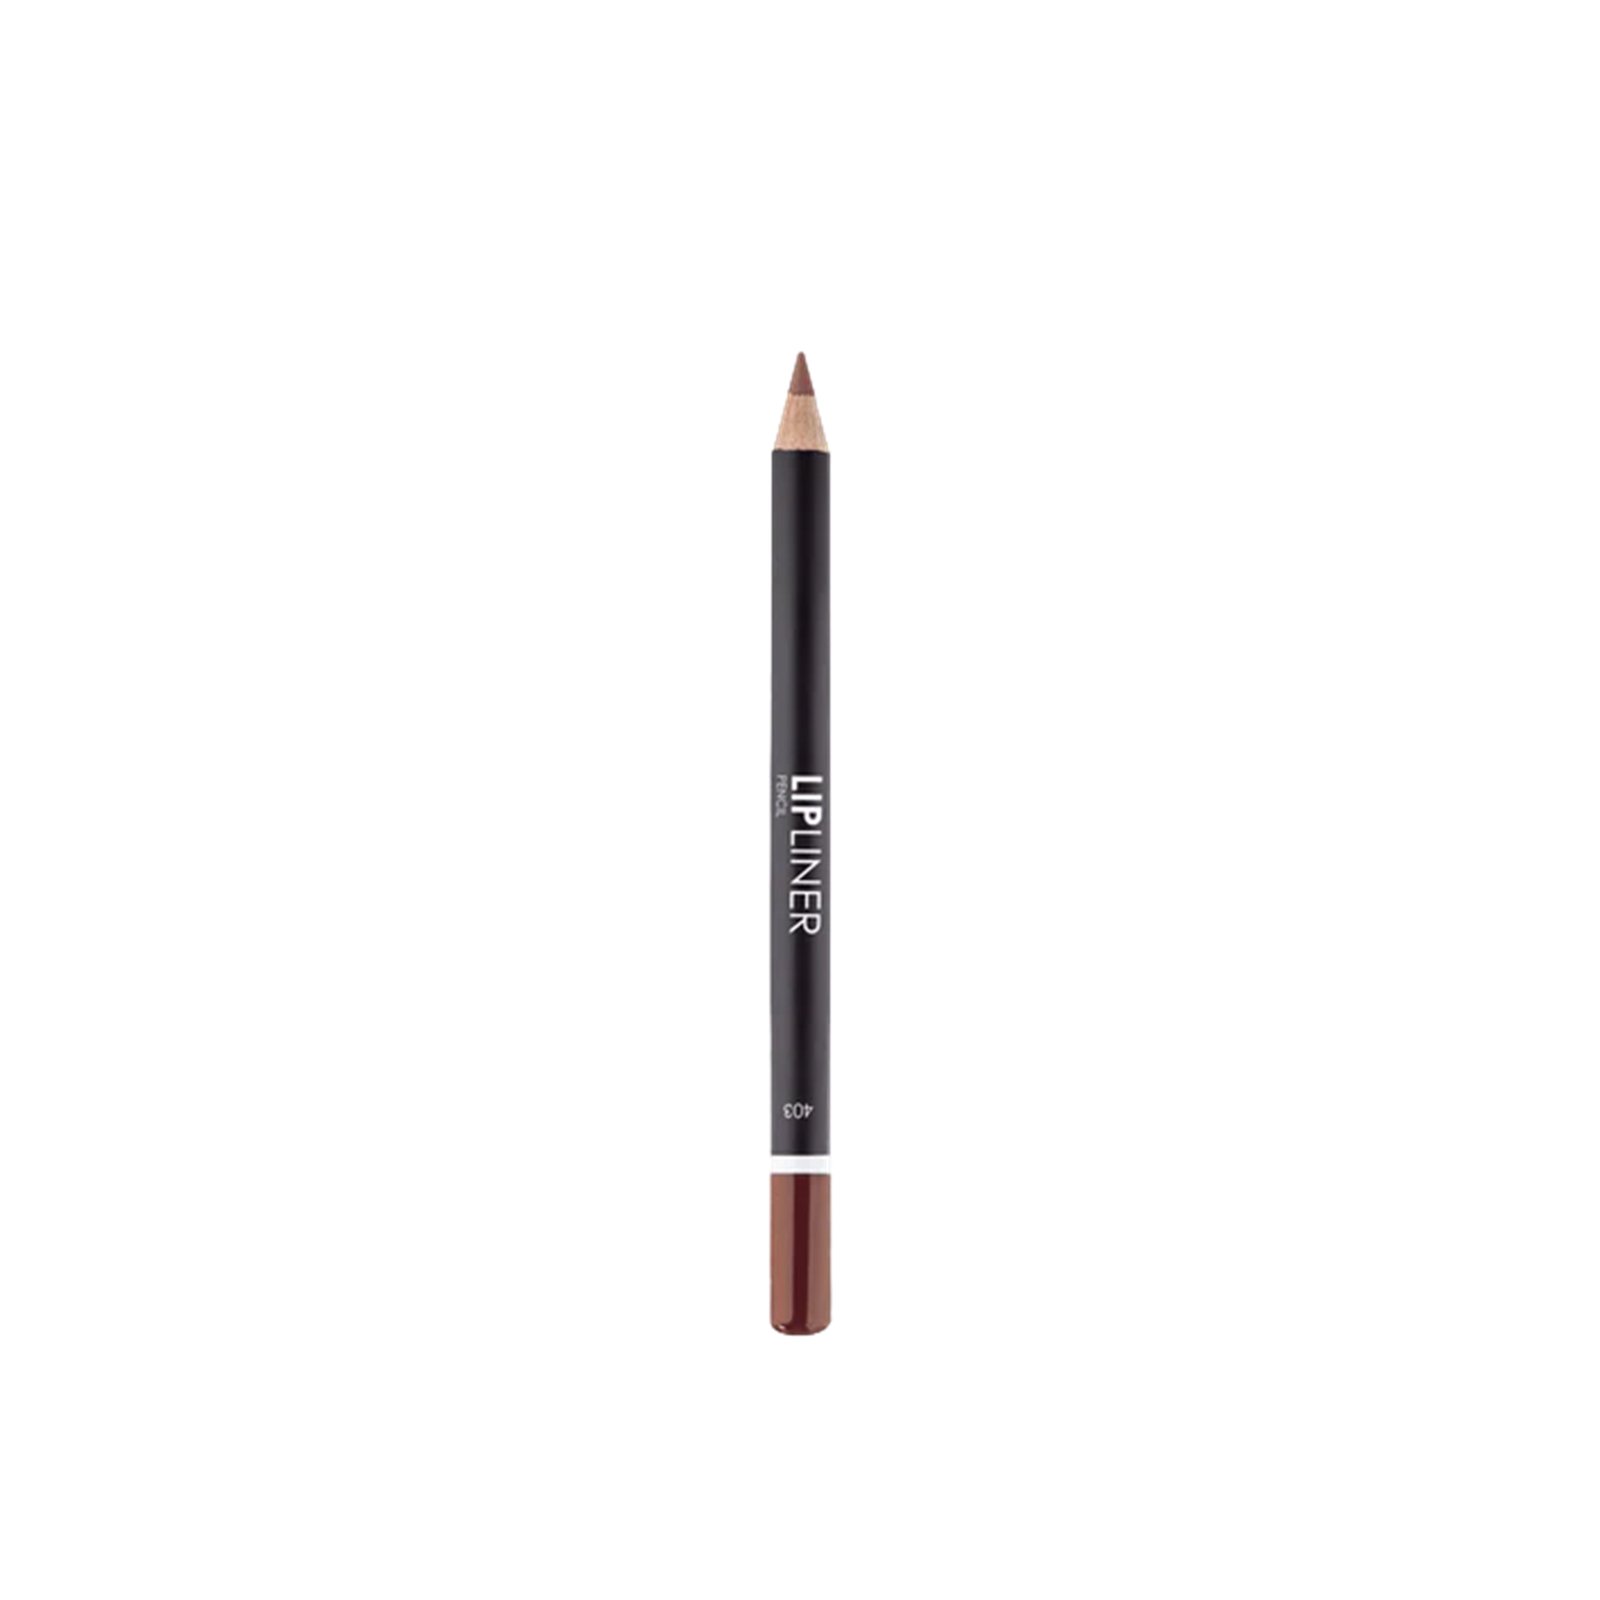 Lamel Lip Liner Pencil 403 1.7g (0.05oz)